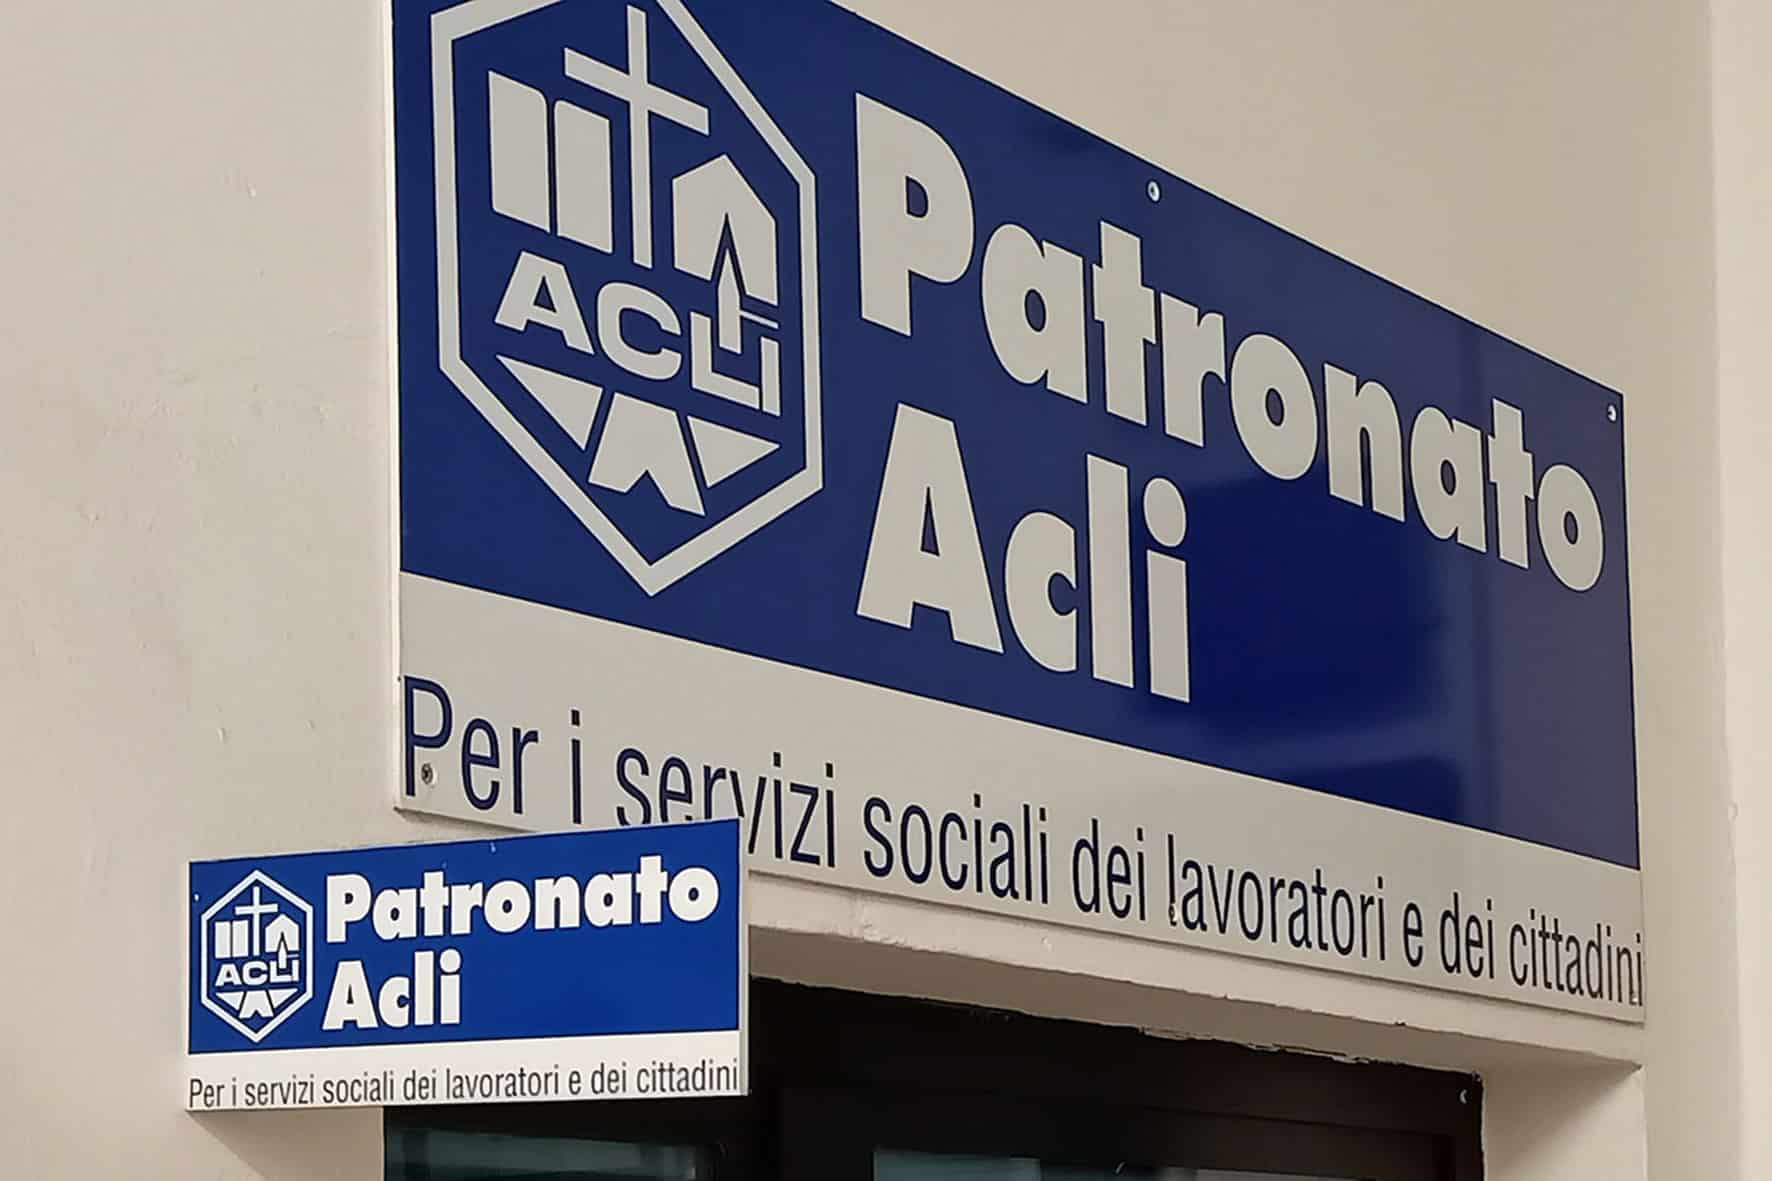 Arezzo Il Mese Di Ottobre Del Patronato Acli è Dedicato Alle Malattie Professionali Toscana News 1376